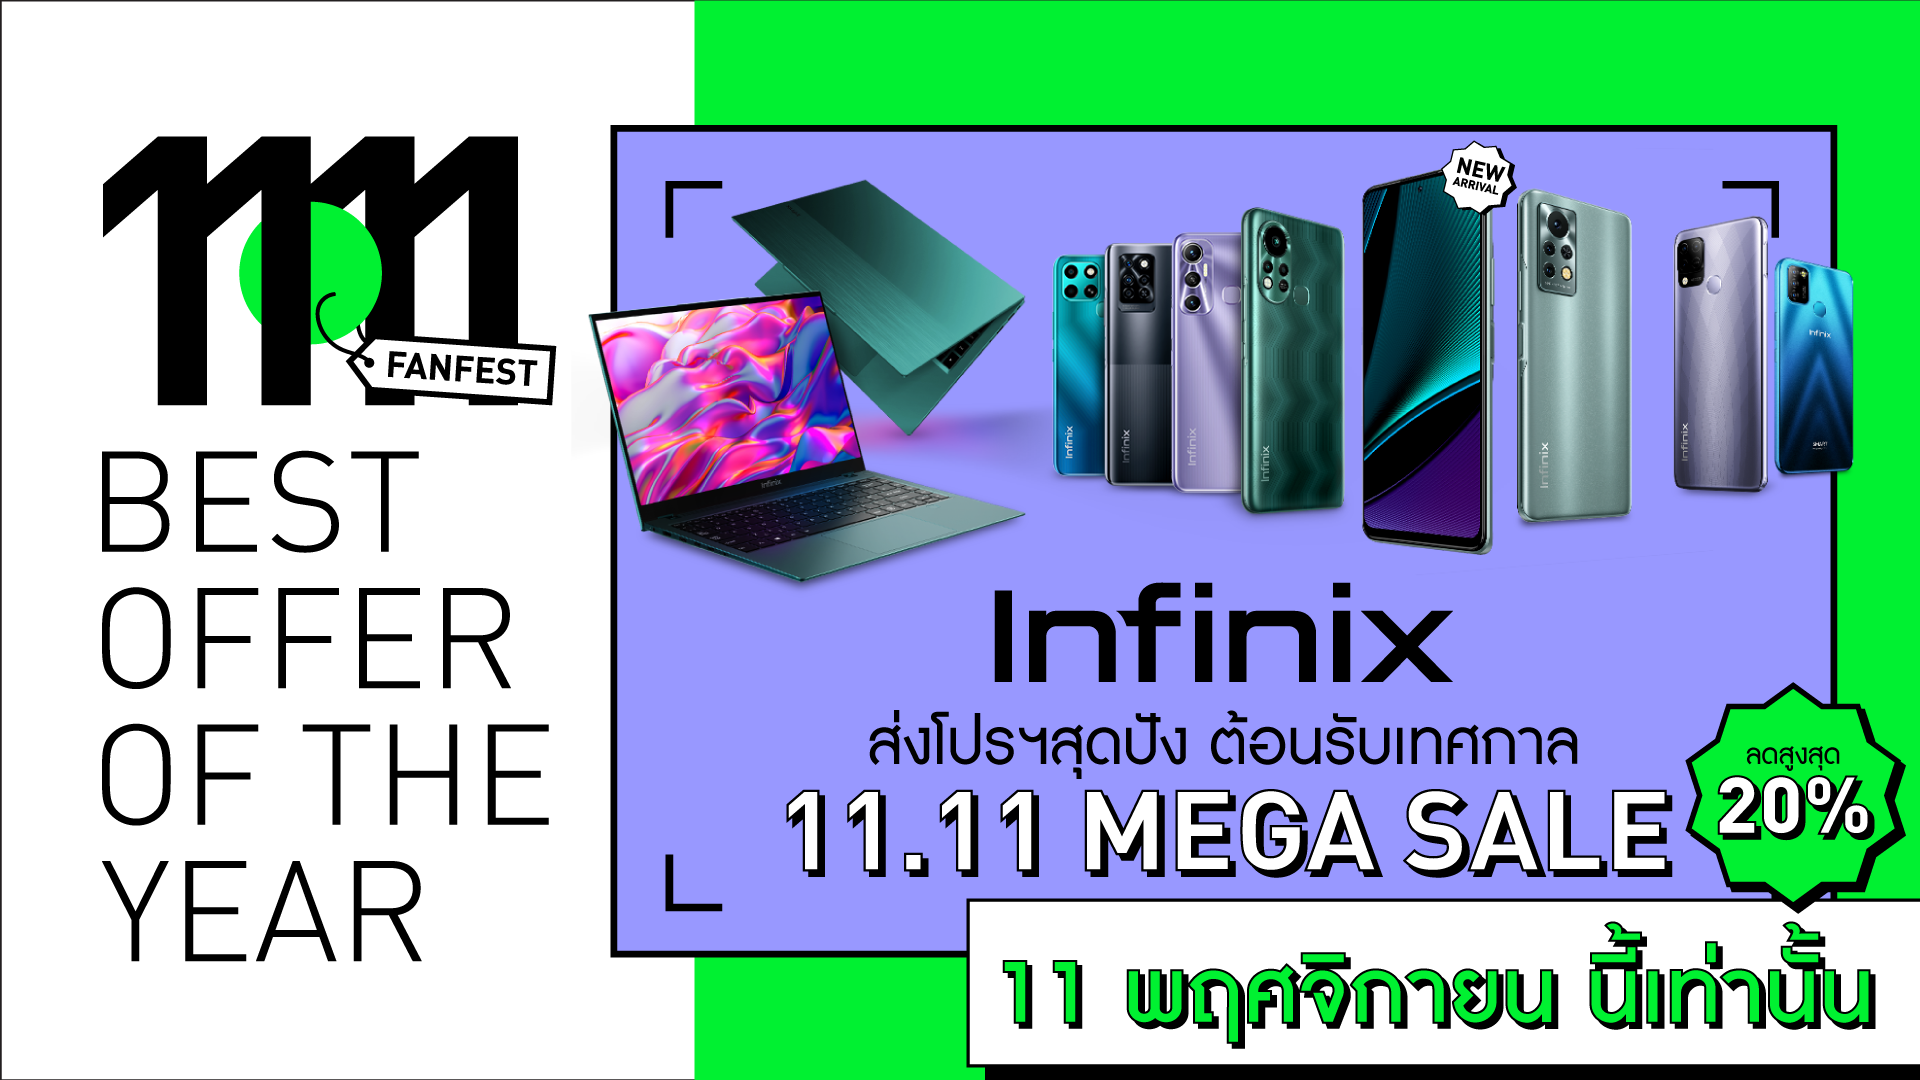 Infinix ส่งโปรฯสุดปัง ต้อนรับเทศกาล 11.11 Mega sale ลดสูงสุดกว่า 20% ในช่วงวันที่ 11 พฤศจิกายน นี้เท่านั้น